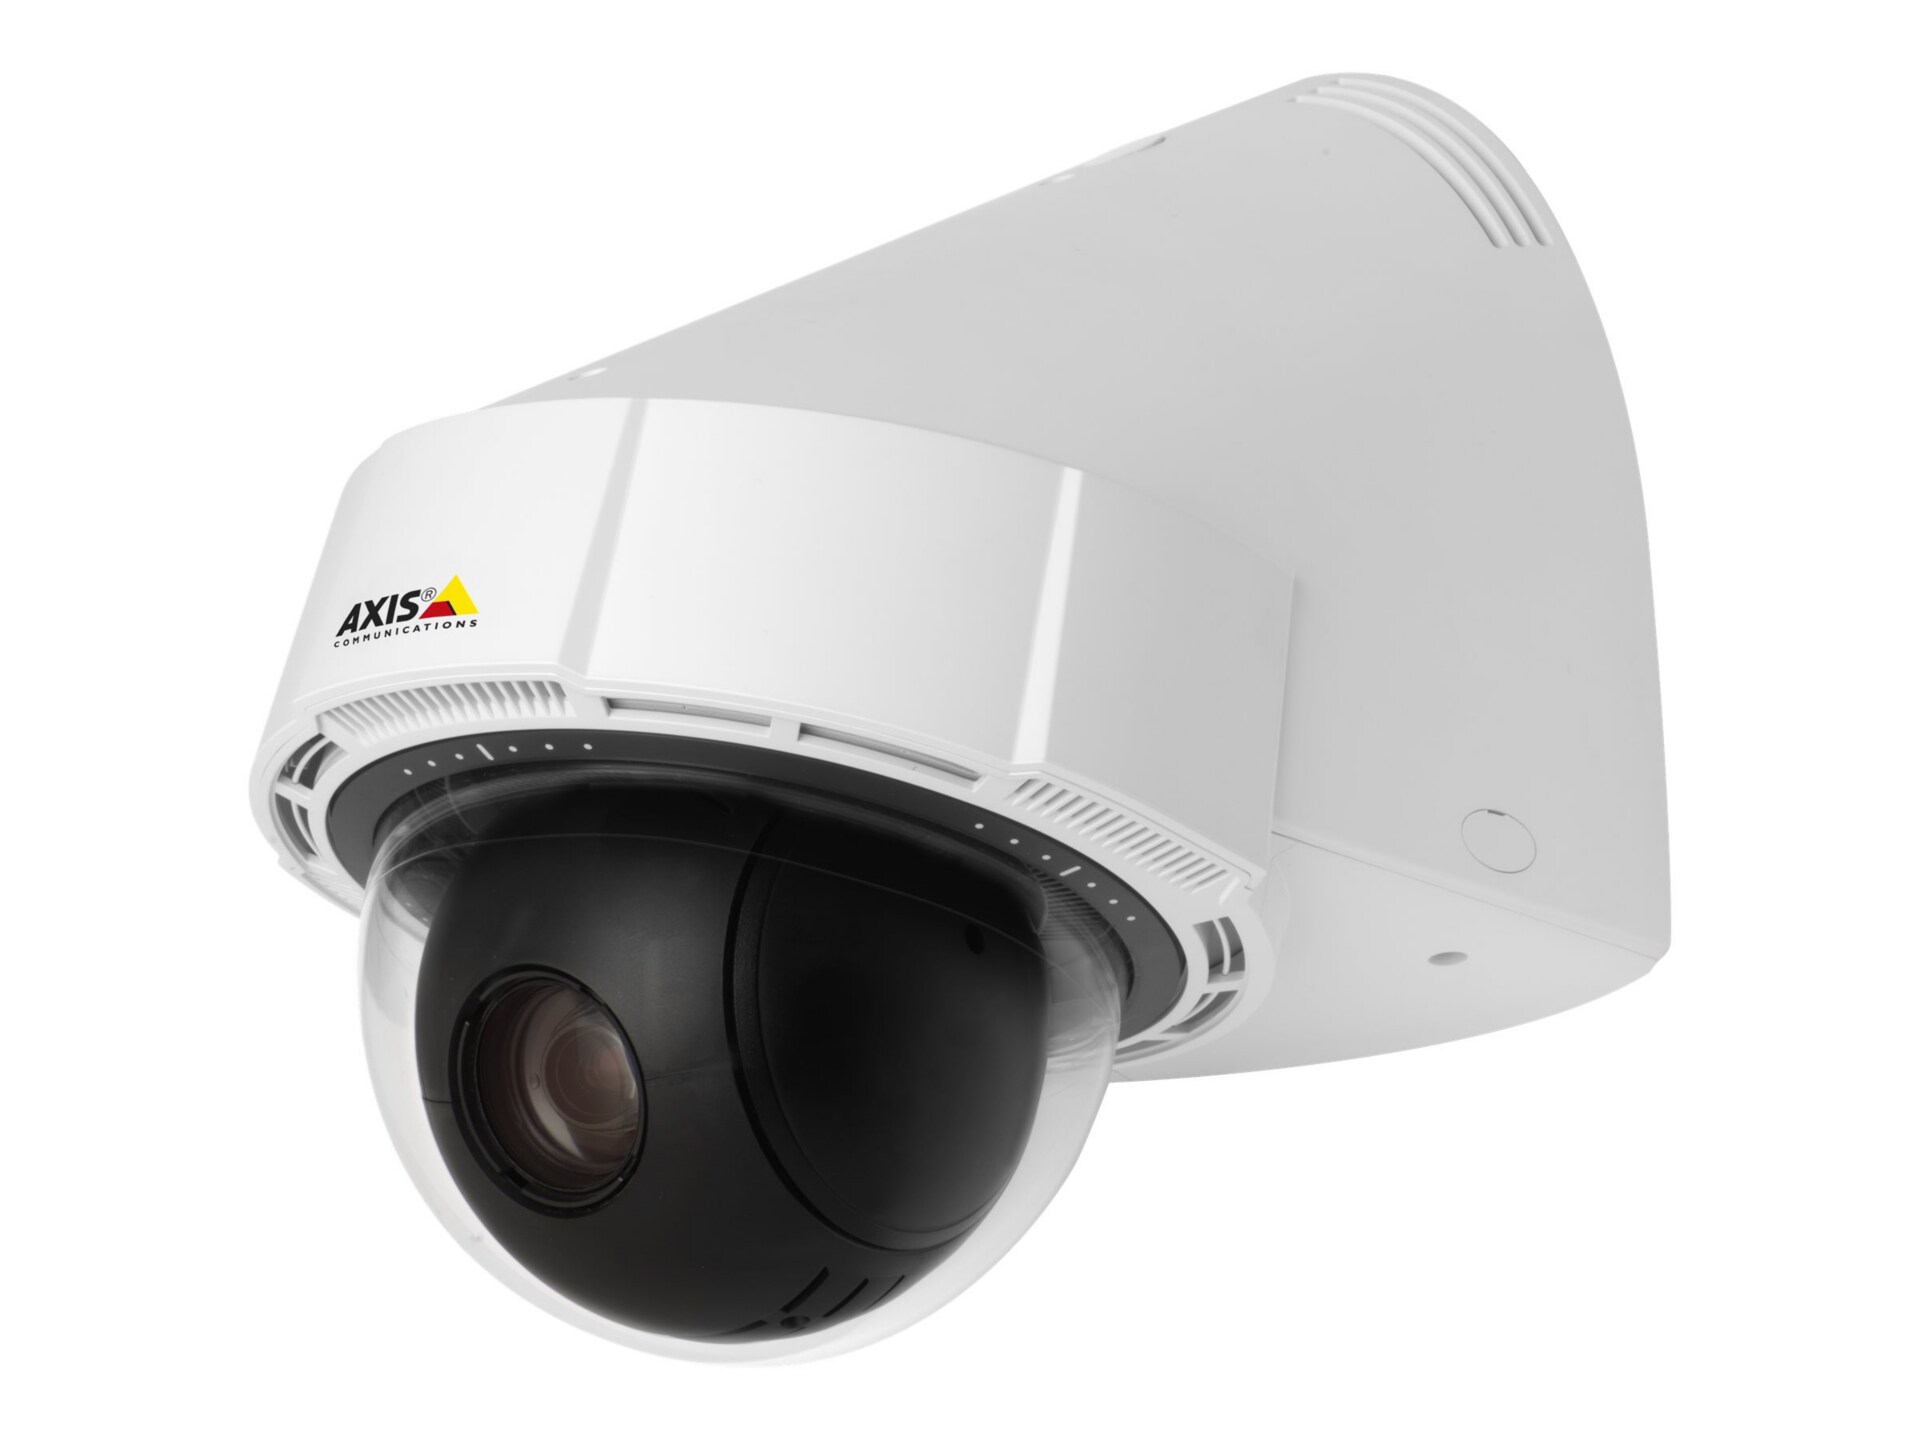 AXIS P5415-E PTZ Dome Network Camera 60 Hz - network surveillance camera